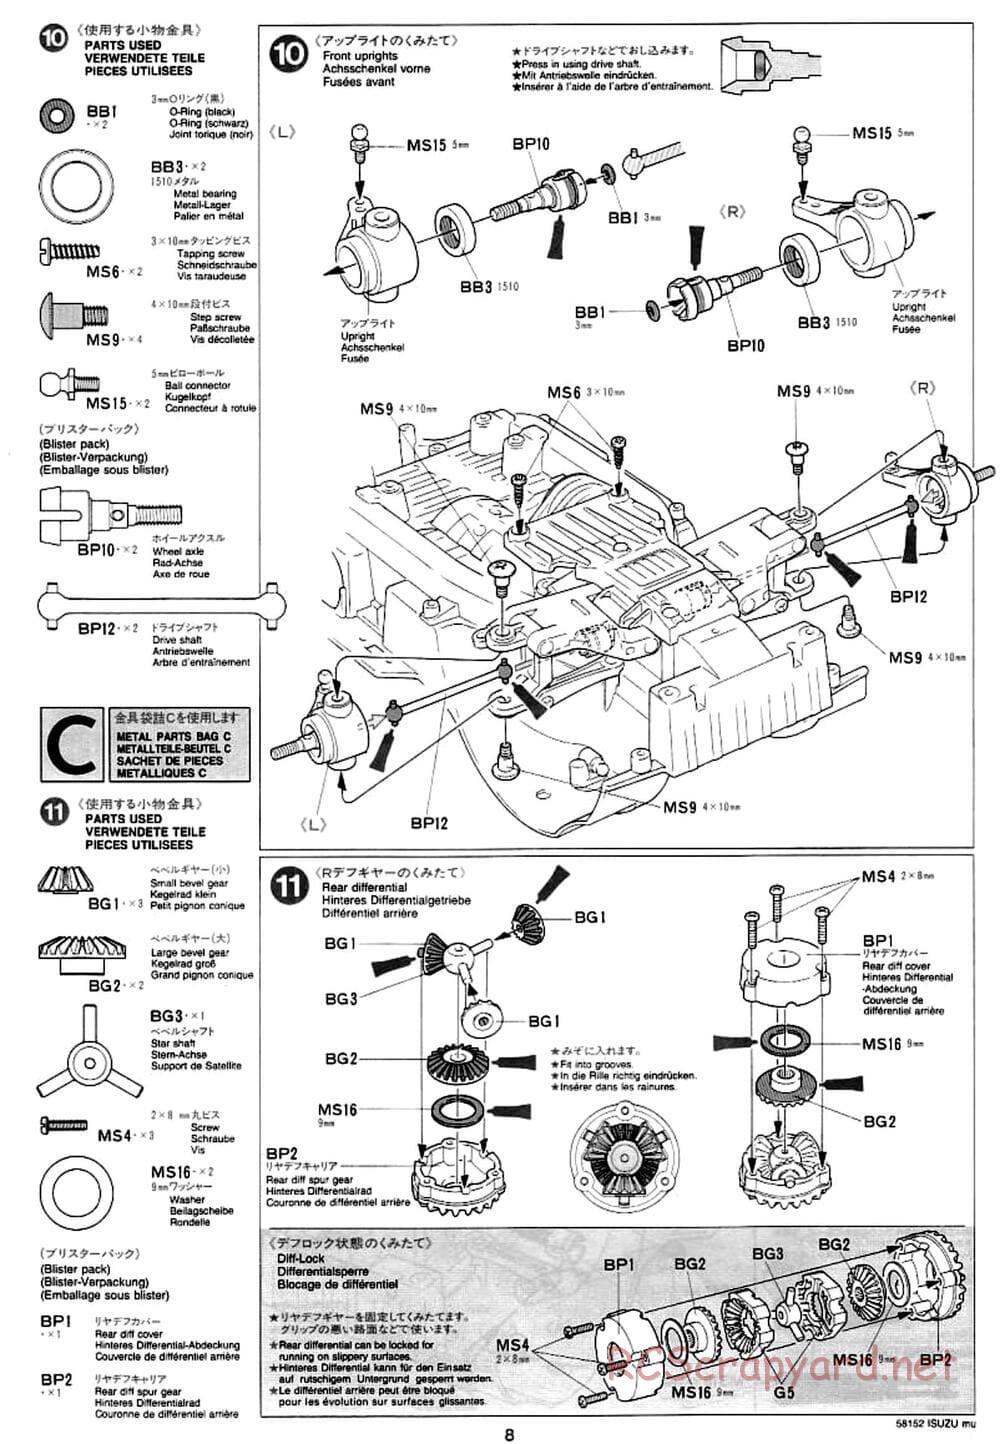 Tamiya - Isuzu Mu - CC-01 Chassis - Manual - Page 8